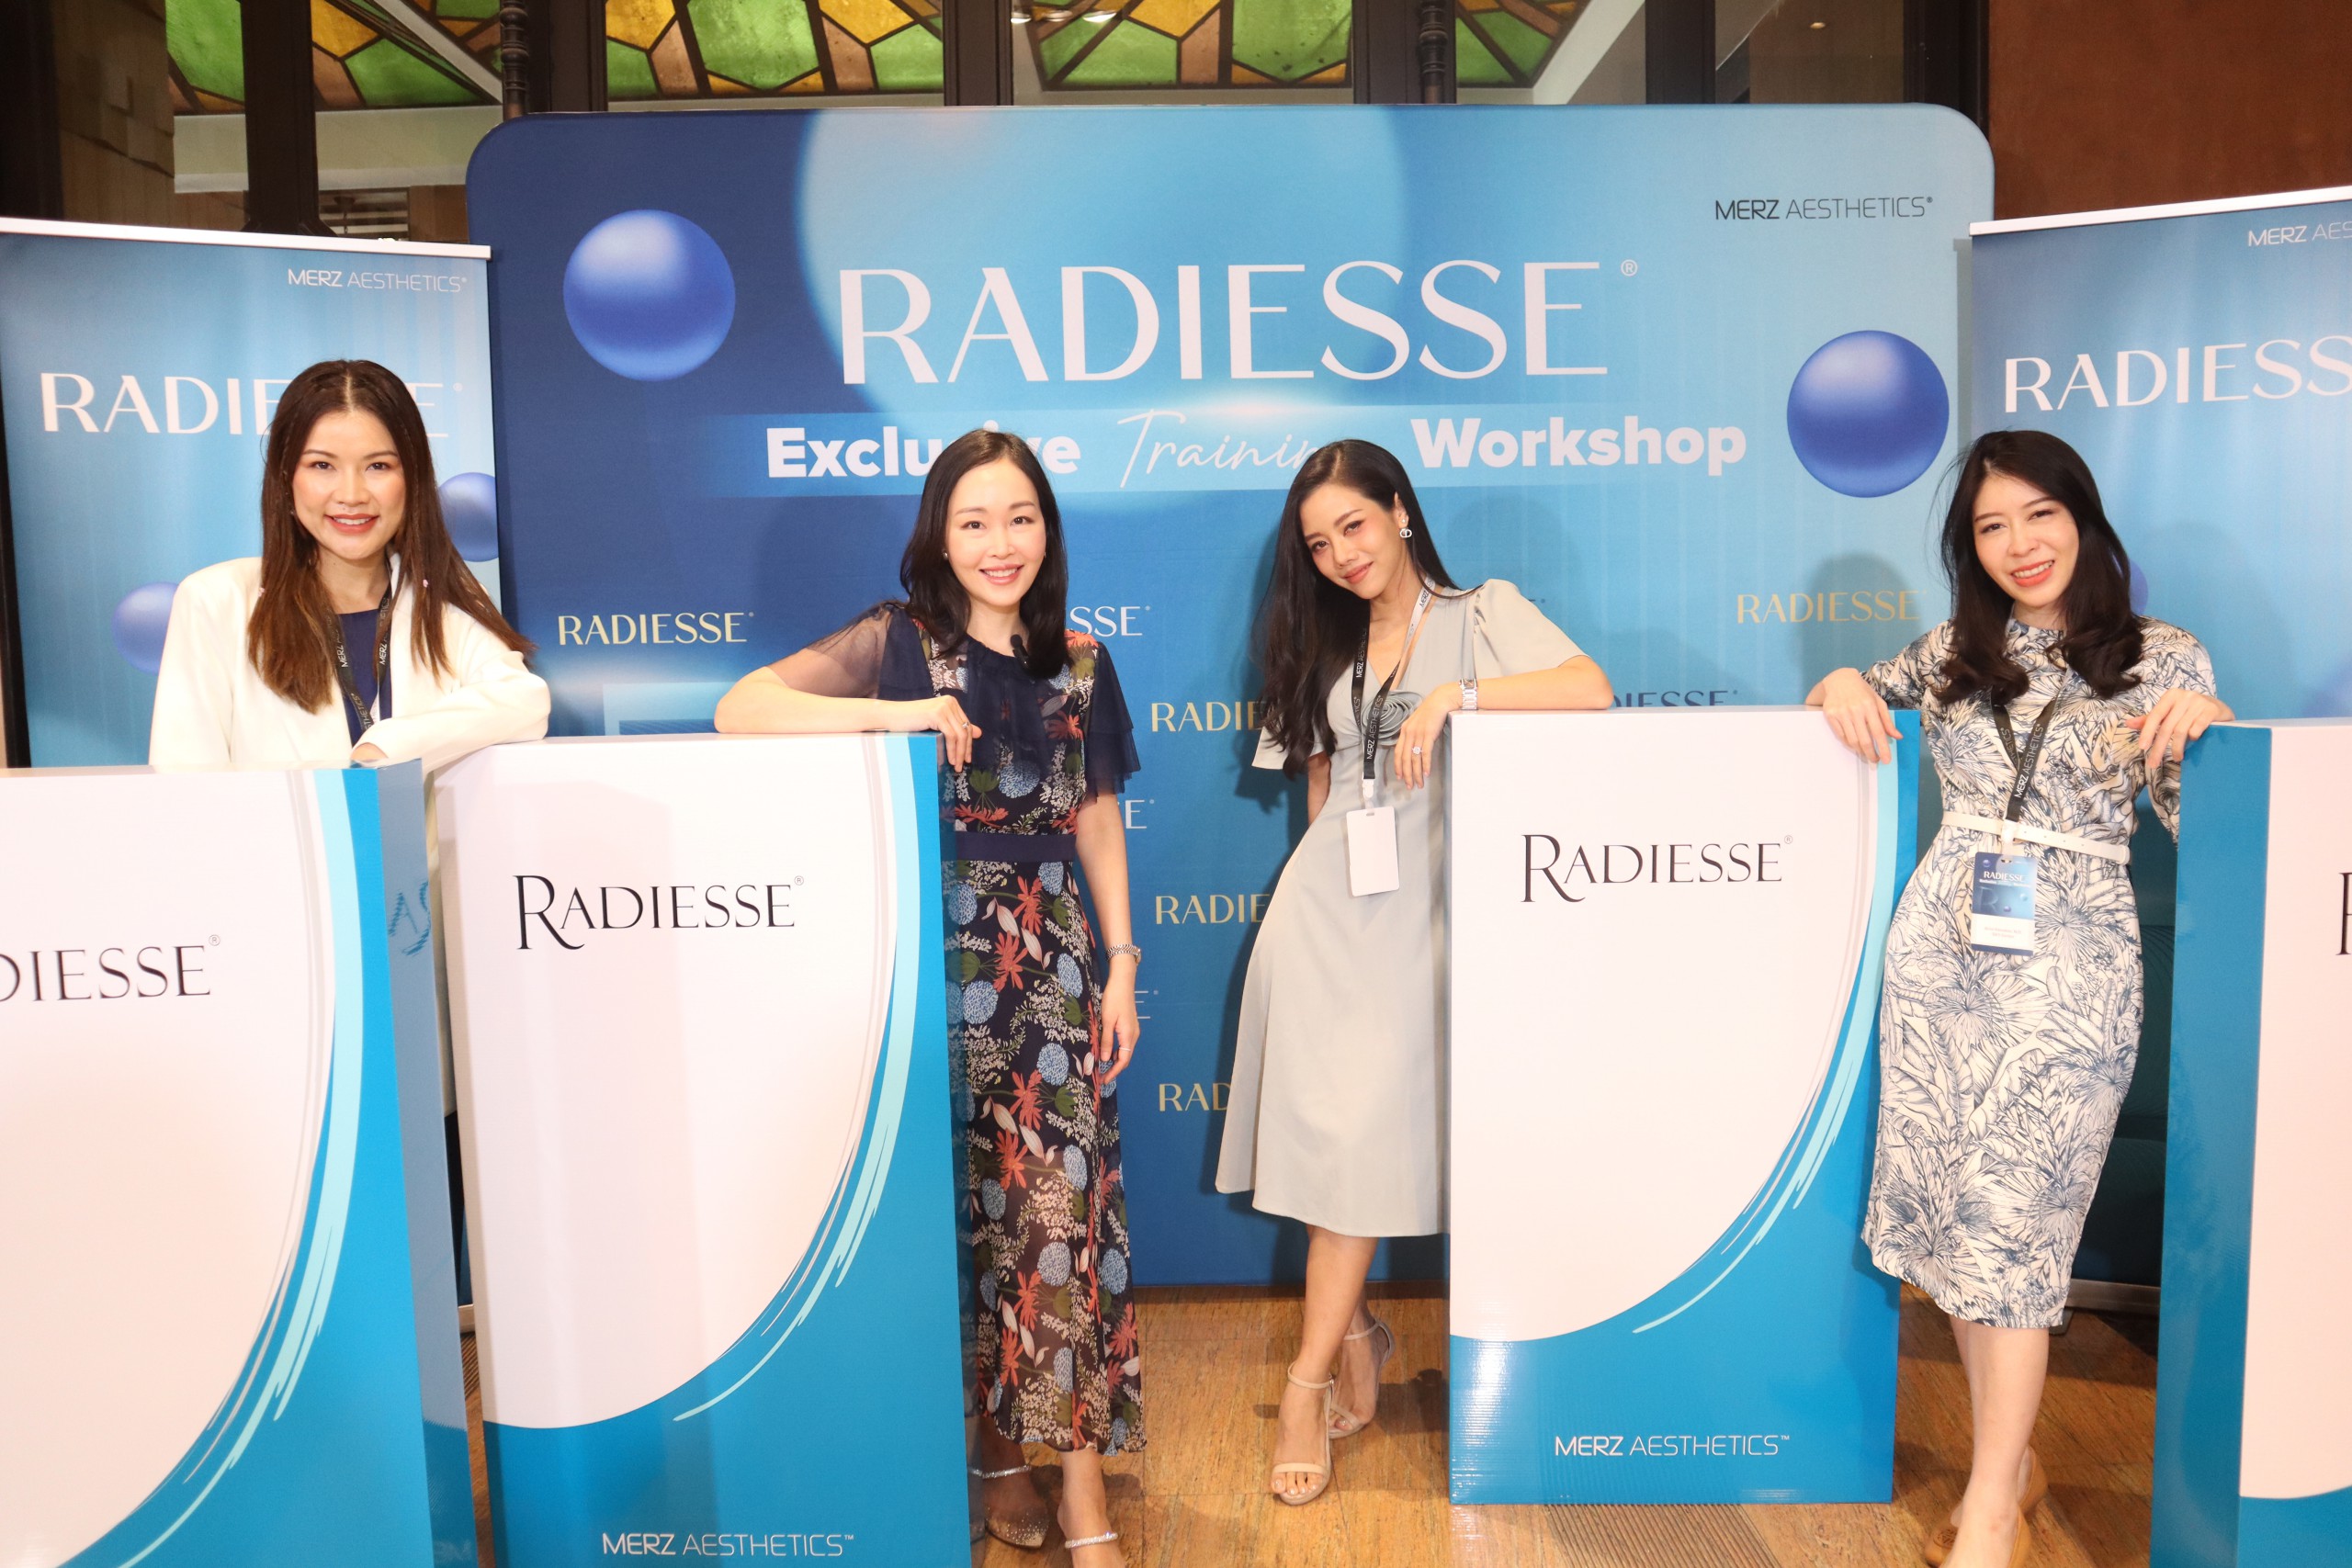 Radiesse Exclusive Training workshop